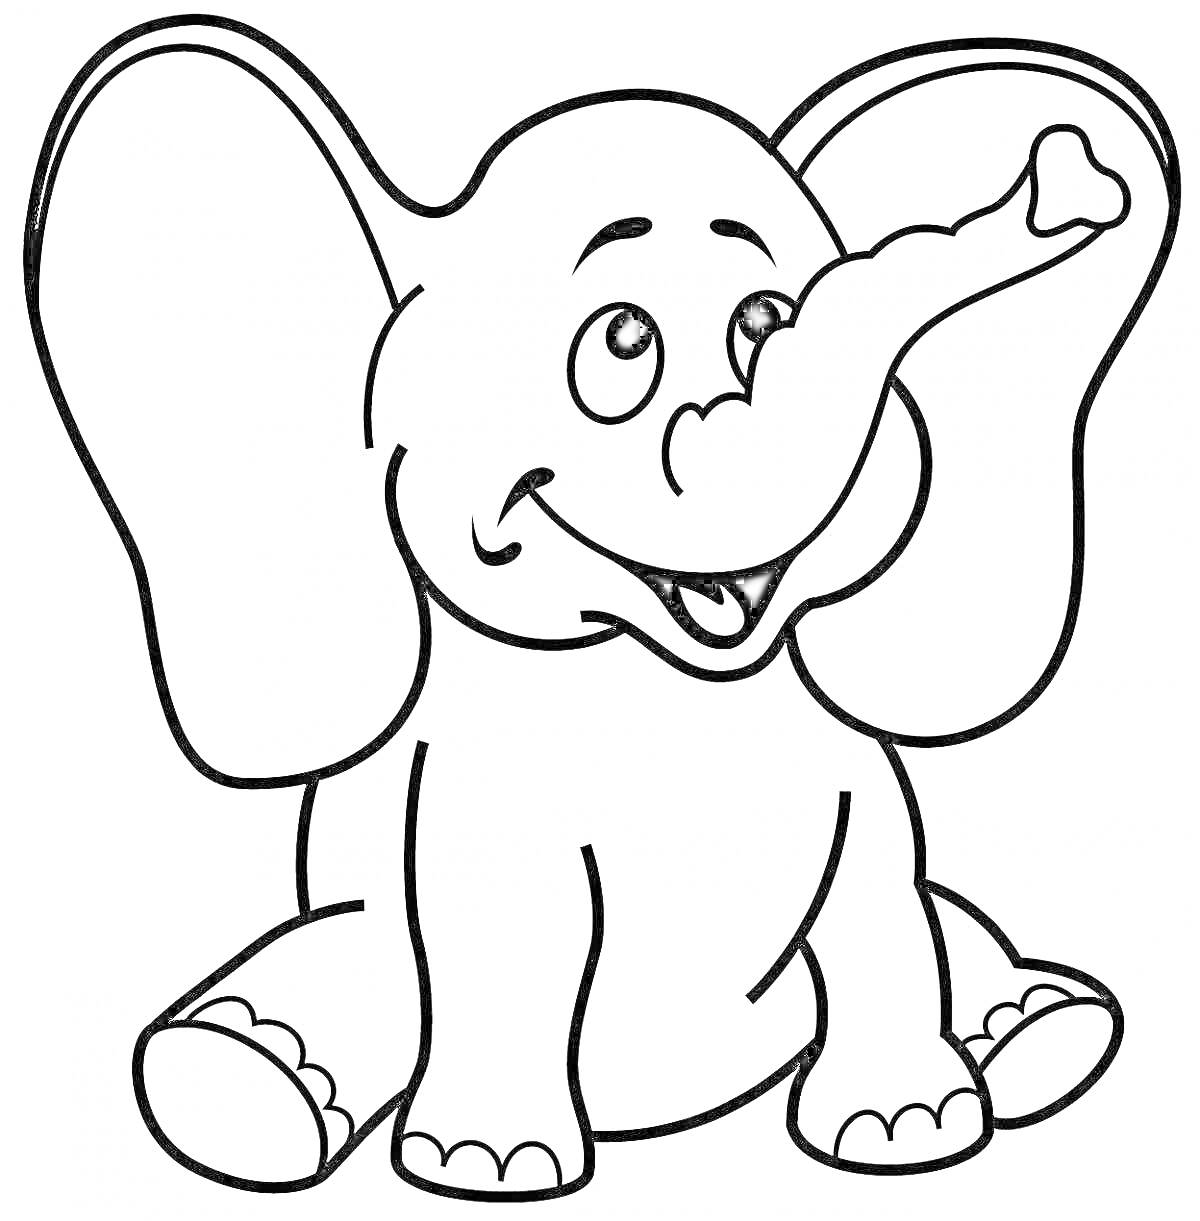 Раскраска улыбающийся слоненок с большими ушами и поднятым хоботом